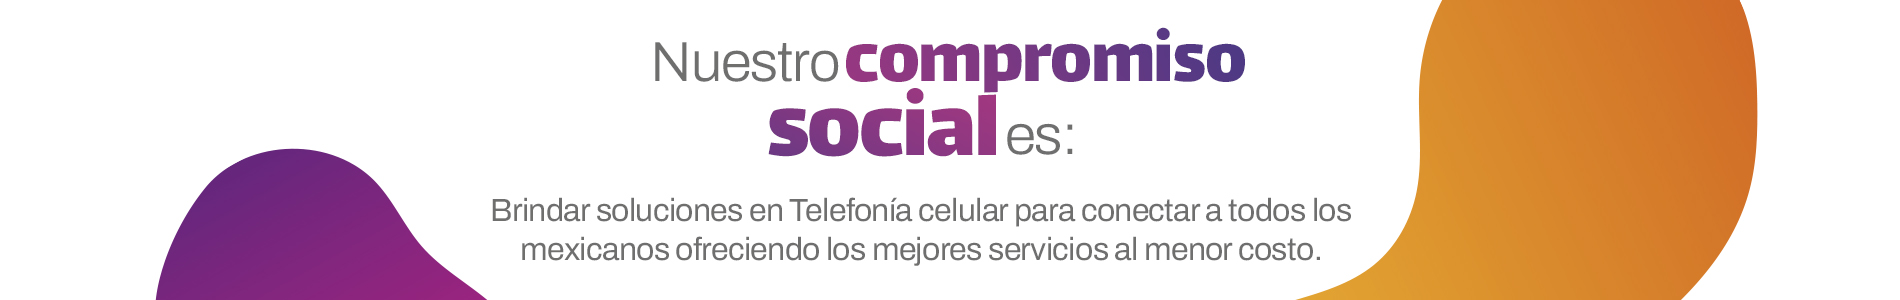 Nuestro-compromiso-social-es-brindar-soluciones-en-telefonia-celular-para-conectar-a-todos-los-mexicanos-ofreciendo-los-mejores-servicios-al-menor-costo